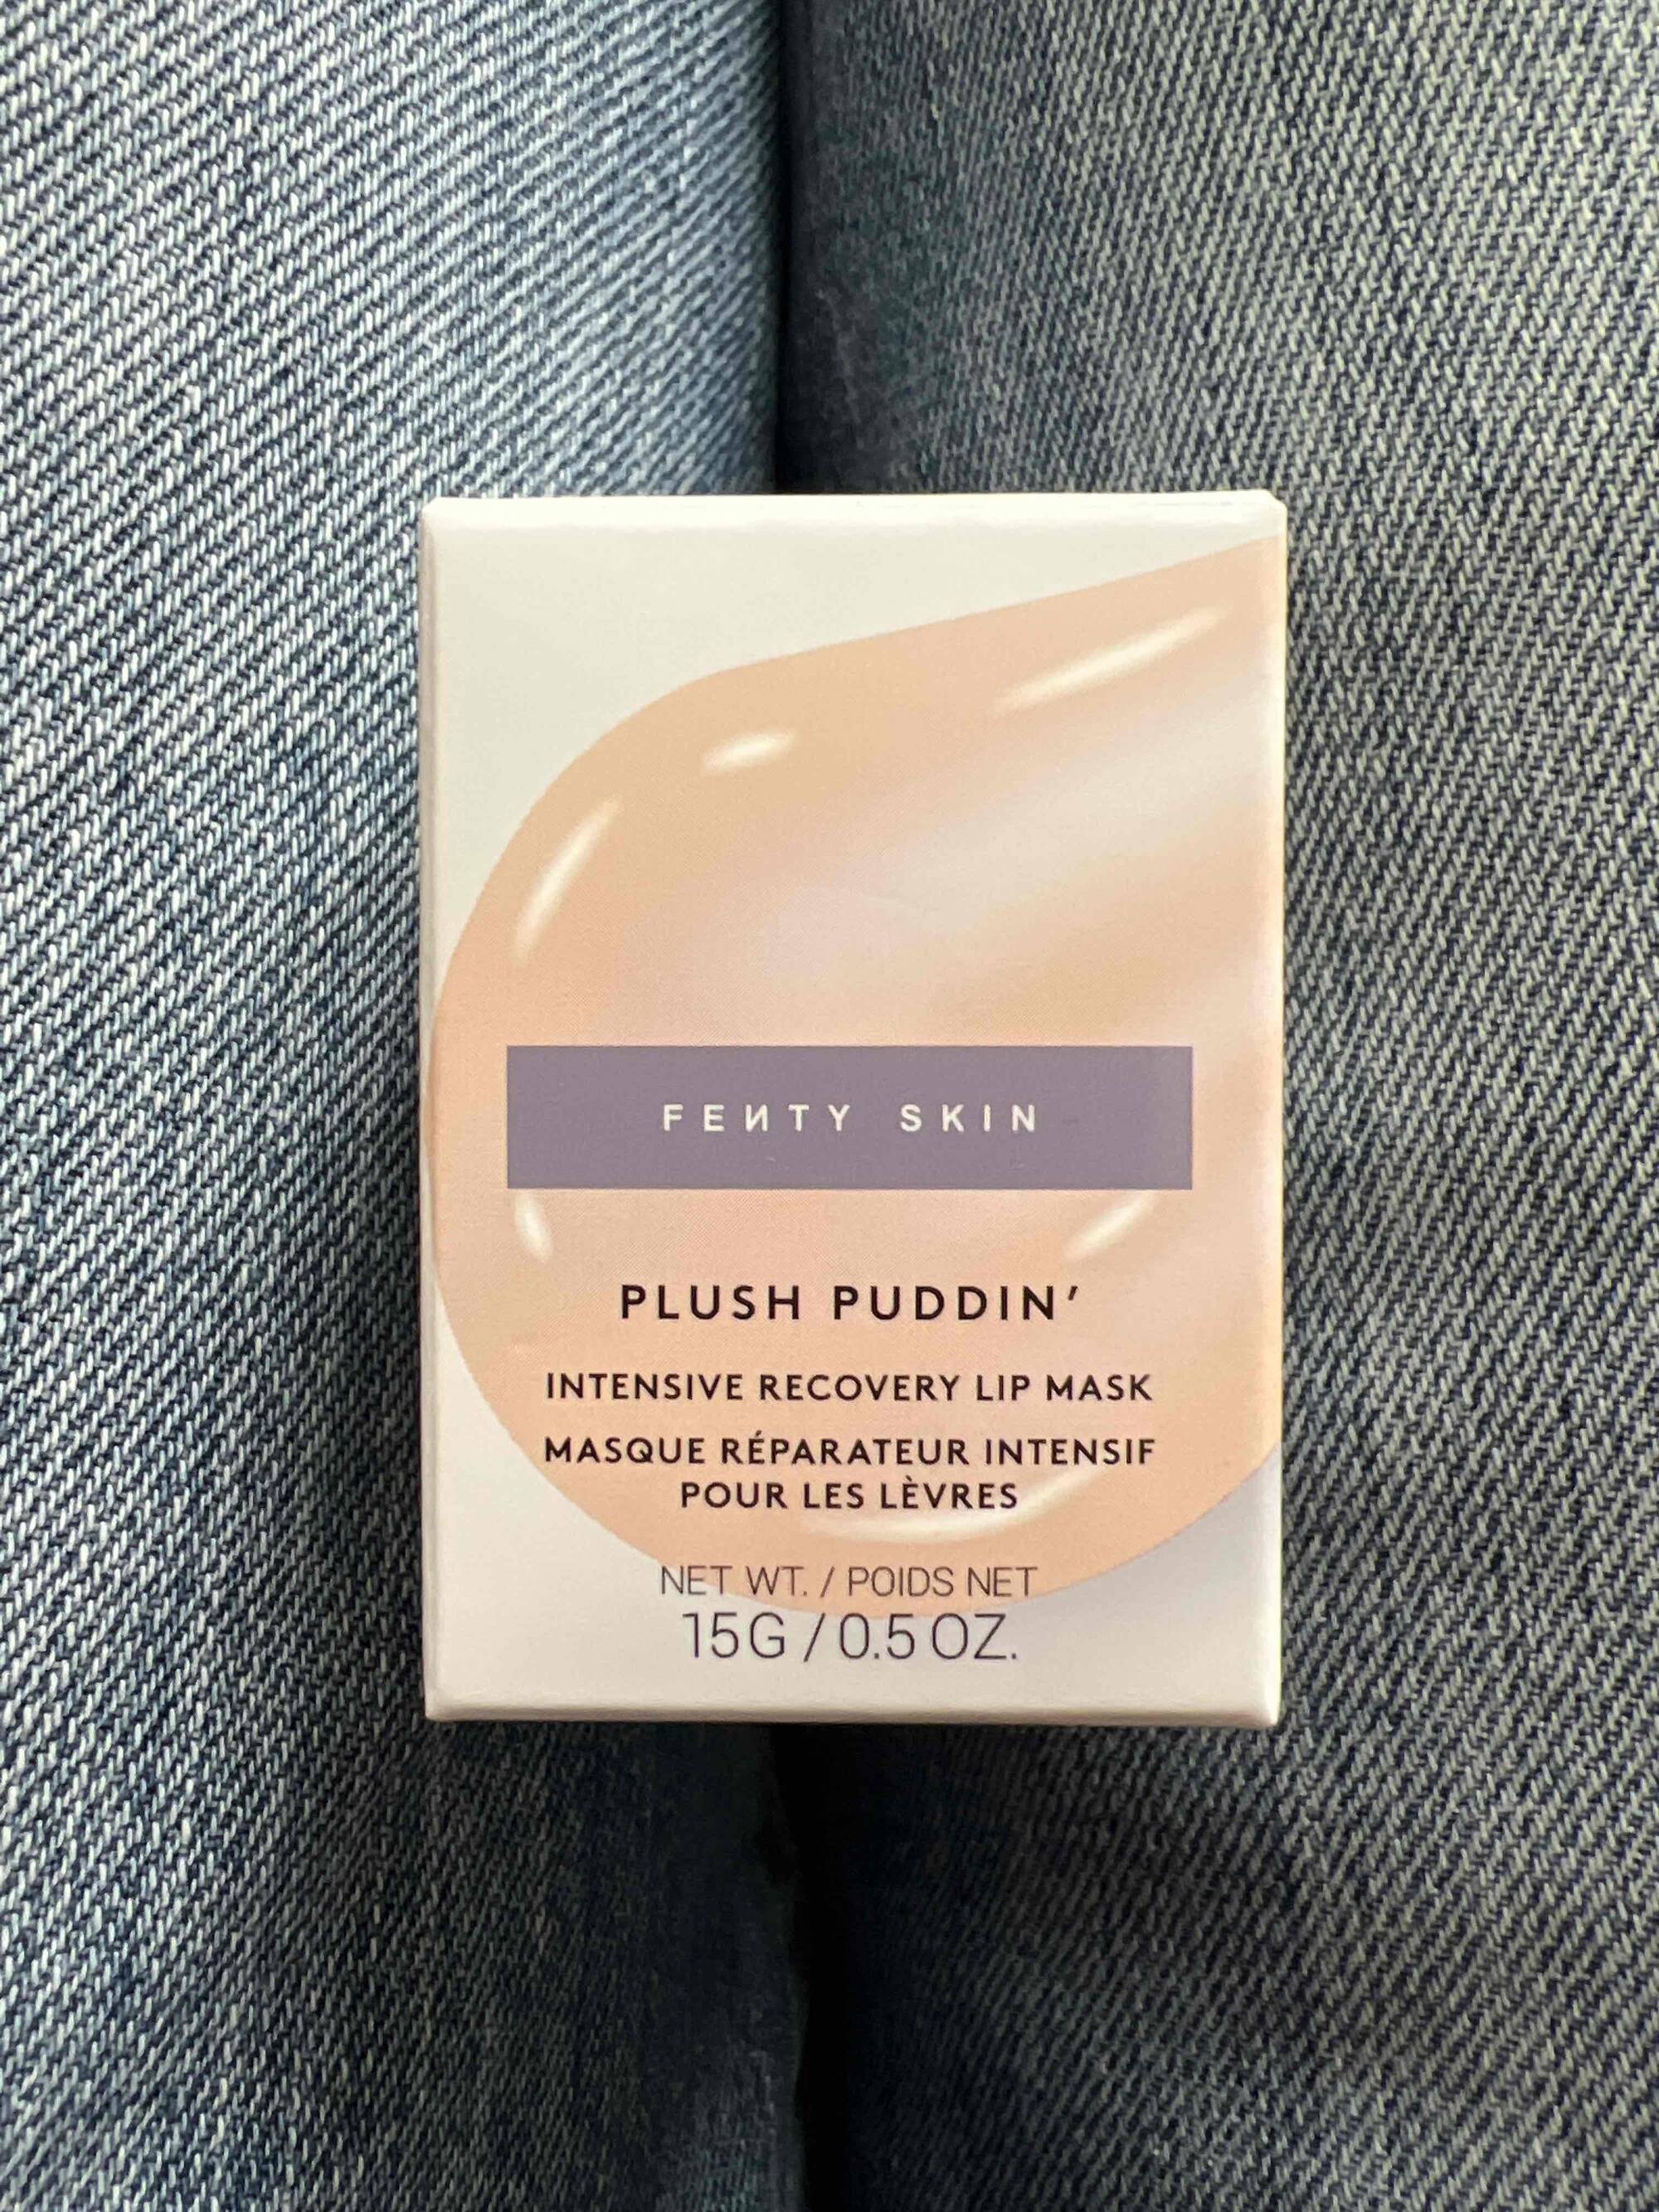 FENTY SKIN - Plush Puddin’ - Masque réparateur intensif pour les lèvres 